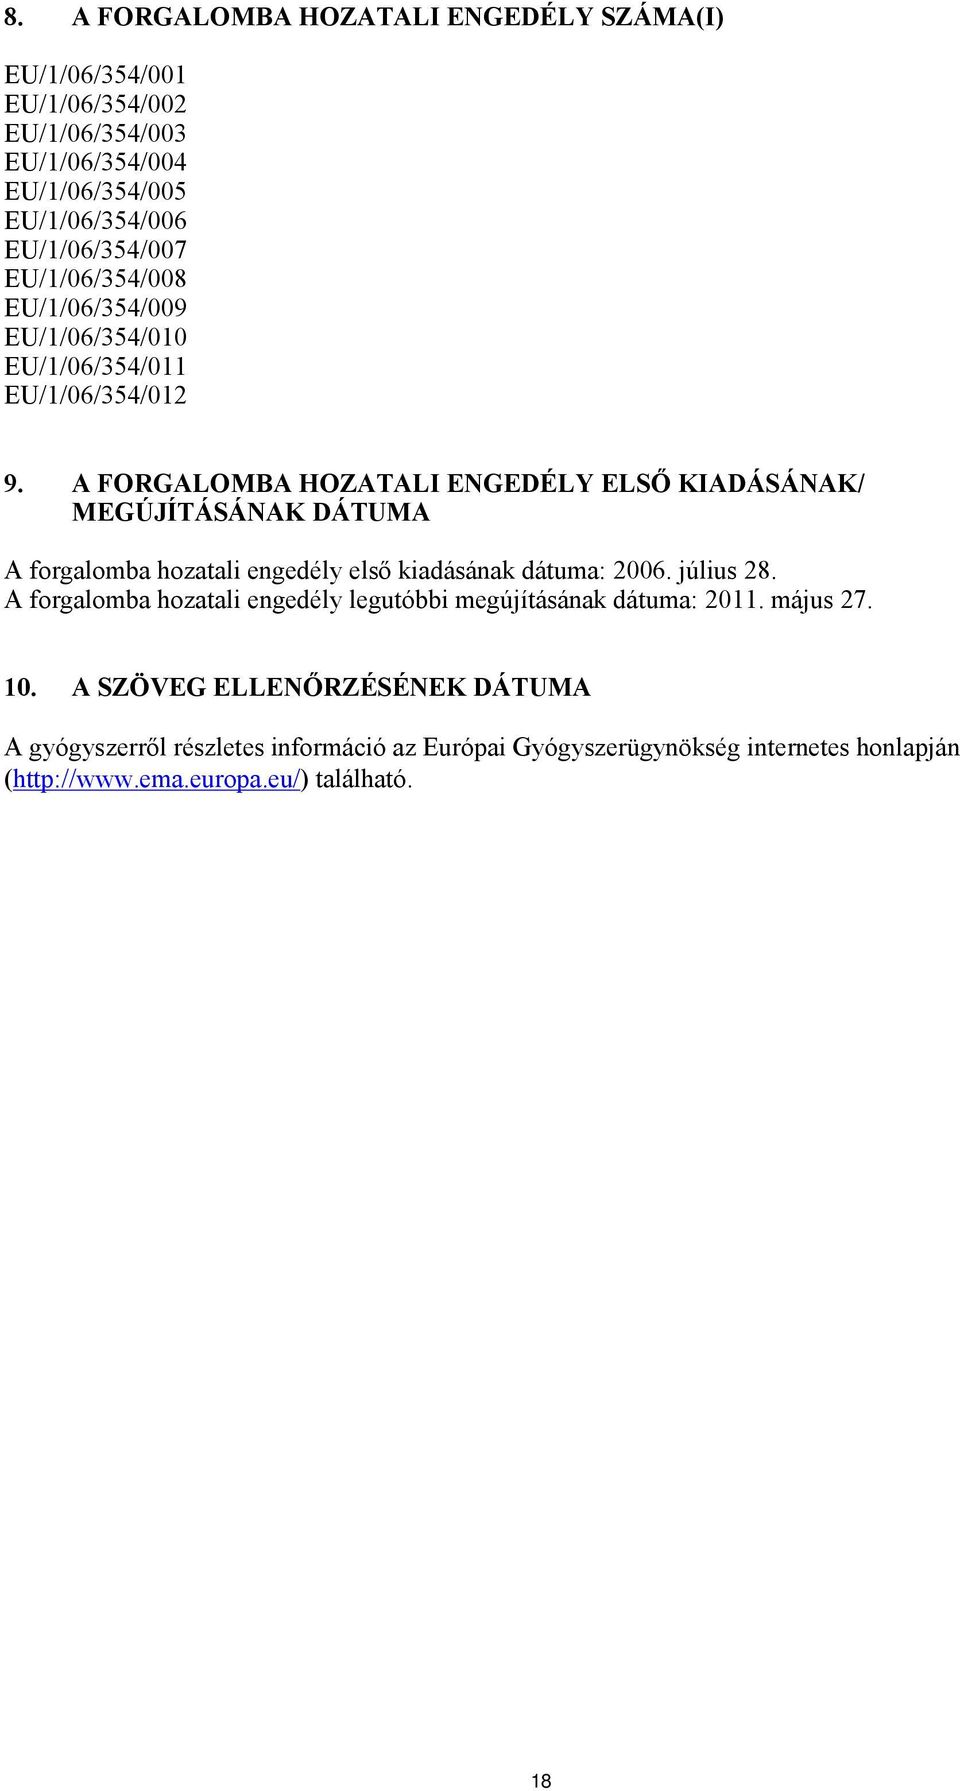 A FORGALOMBA HOZATALI ENGEDÉLY ELSŐ KIADÁSÁNAK/ MEGÚJÍTÁSÁNAK DÁTUMA A forgalomba hozatali engedély első kiadásának dátuma: 2006. július 28.